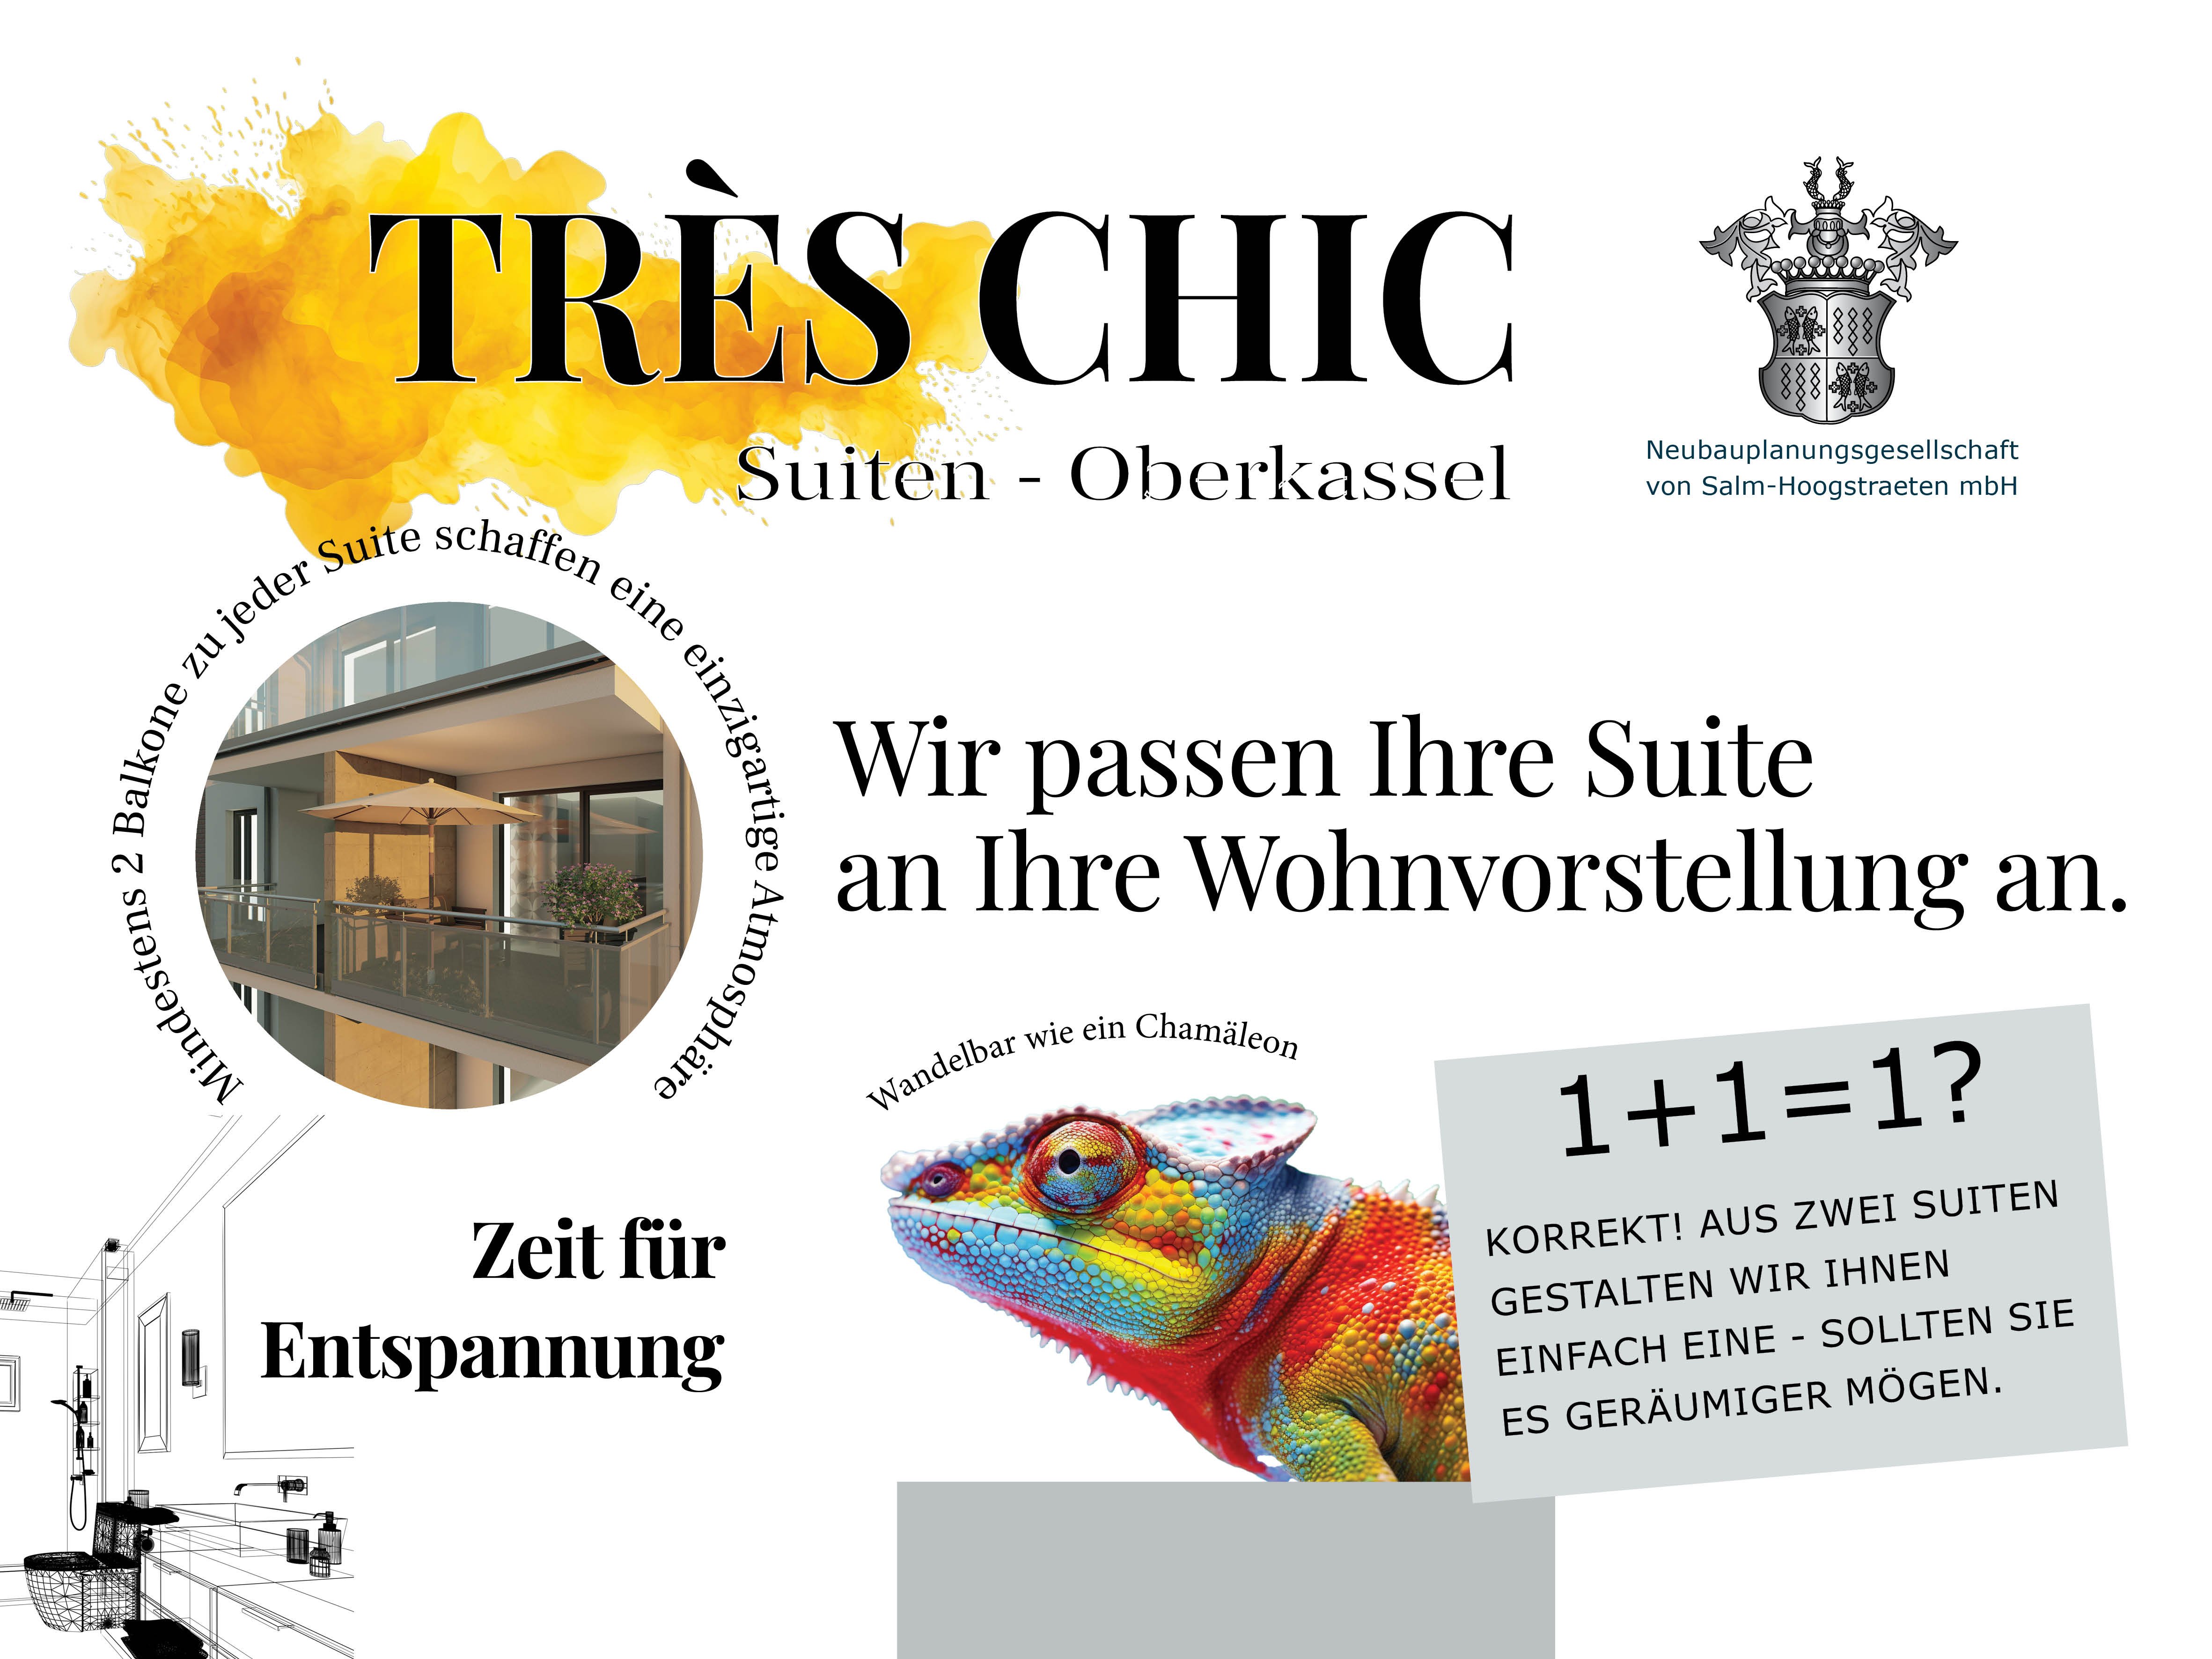 Image new build property Trés chic Suiten-Oberkassel, Düsseldorf